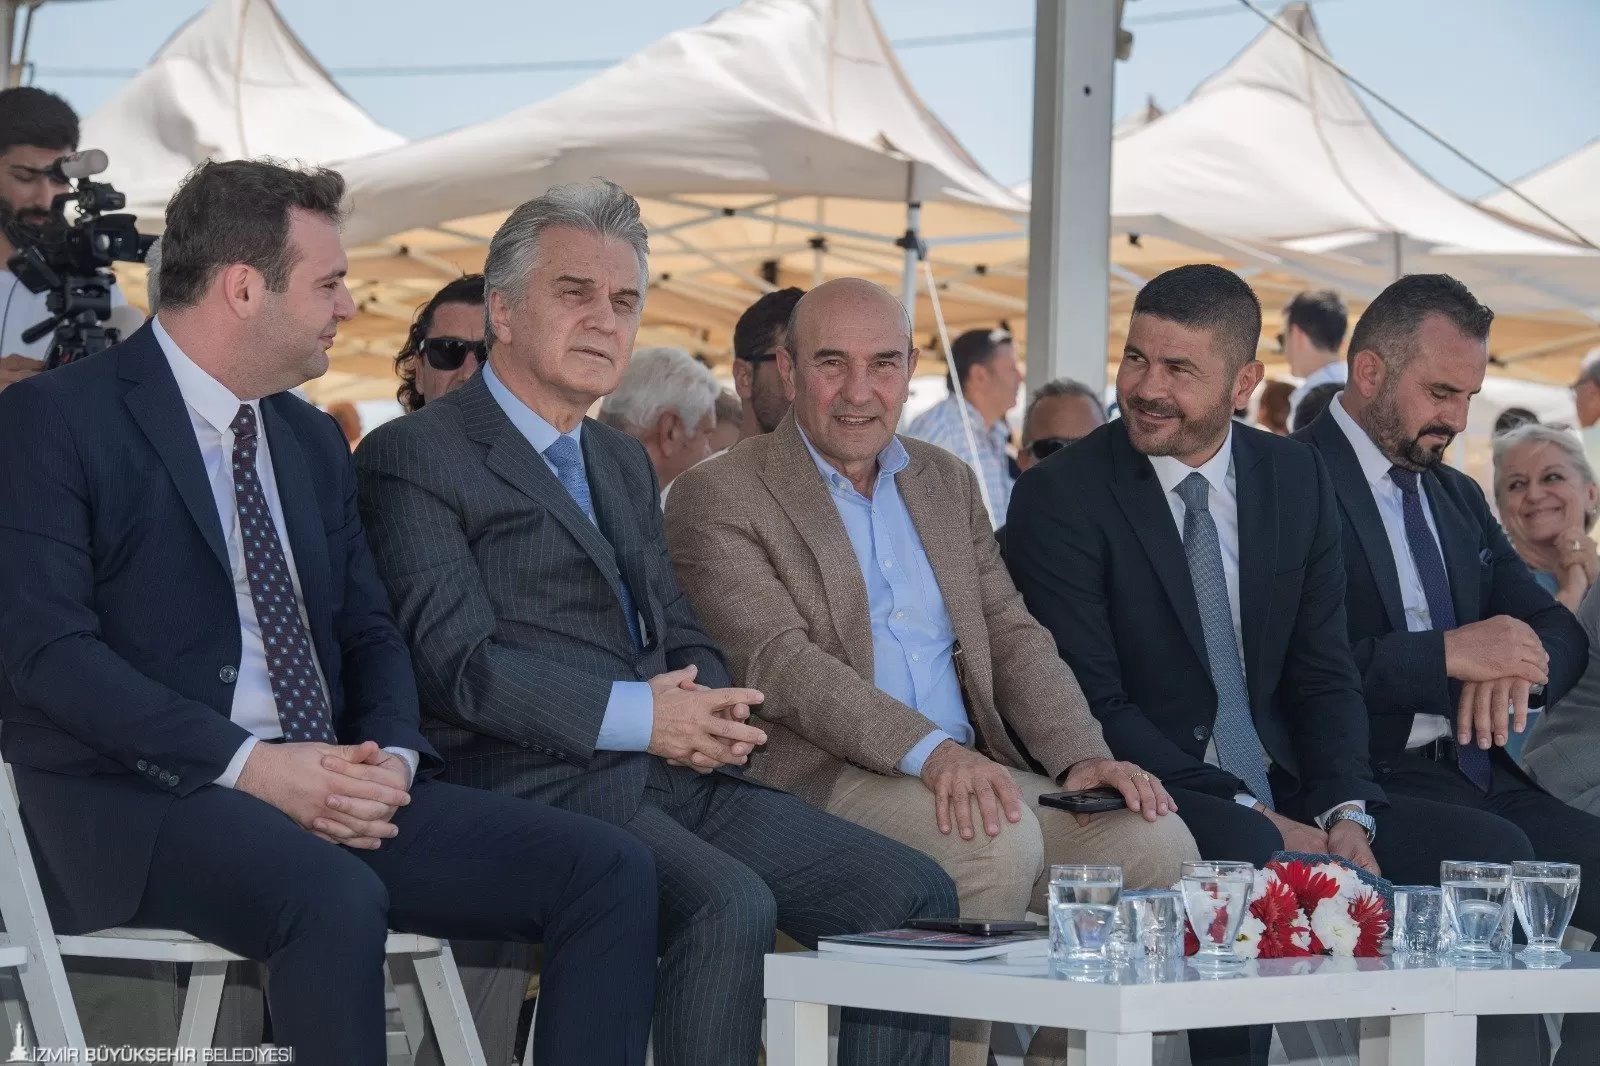 İzmir Büyükşehir Belediye Başkanı Tunç Soyer, Foça Bağarası Yeni Sanayi Sitesi Projesi’nin temel atma töreninde konuştu.